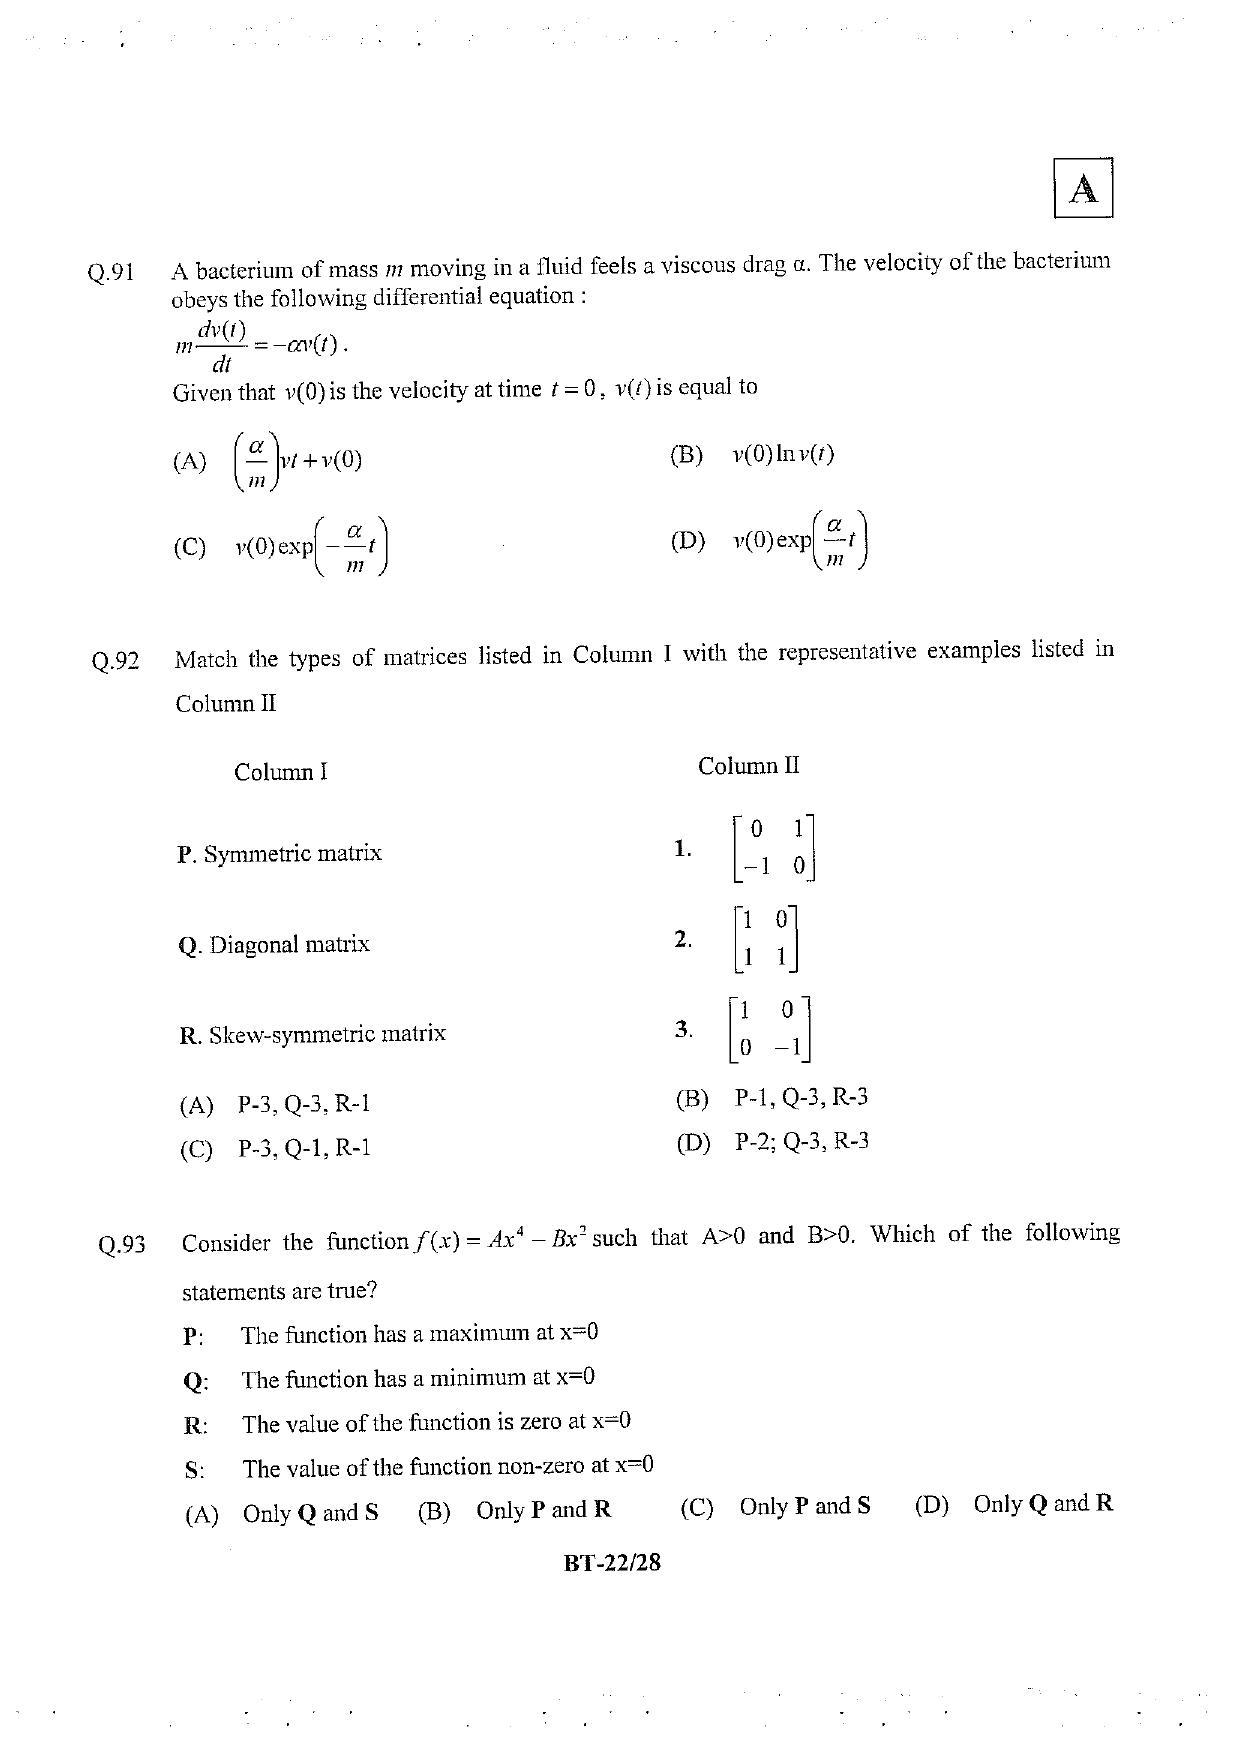 JAM 2013: BT Question Paper - Page 23